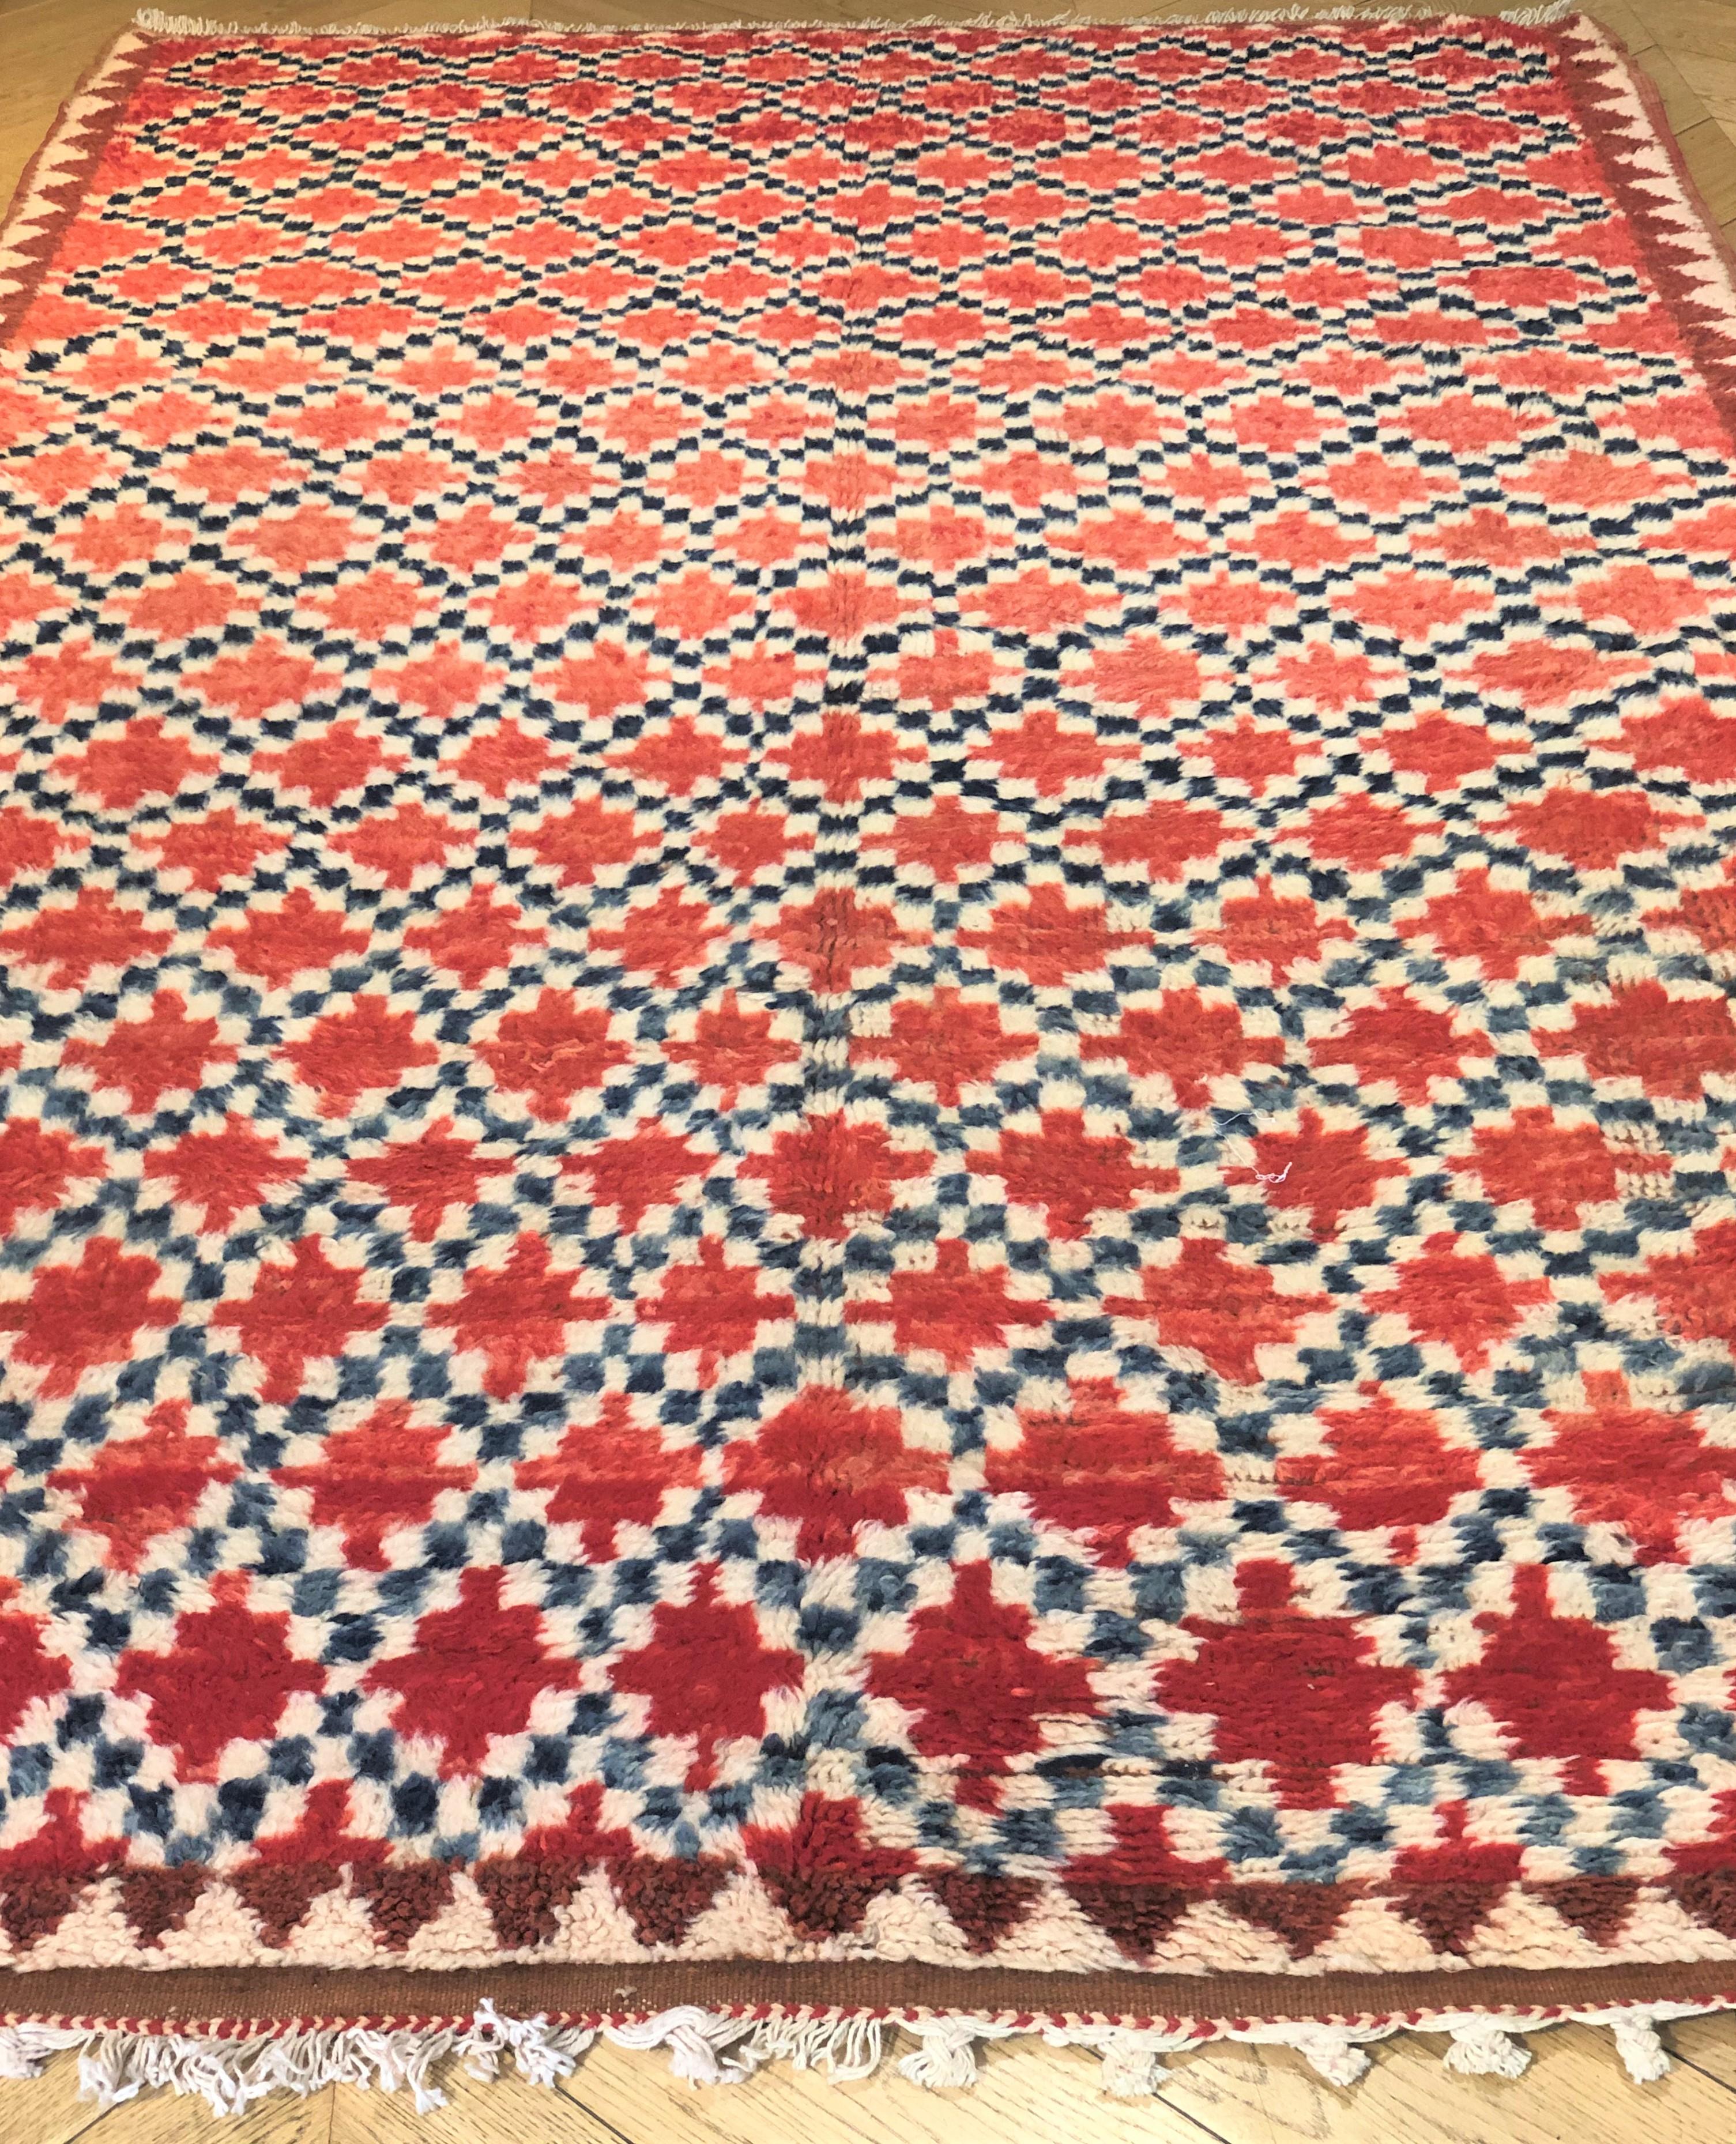 20393 Berber cm. 255 x 147 € 2,800
Schöne Vintage Azilal Teppich mit verschiedenen Schattierungen von Rot / Orange, Creme weiß, schwarz. Die Azilal-Teppiche stammen aus dem steilen und abschüssigen Azilal (marokkanische Region der Berberi), das in